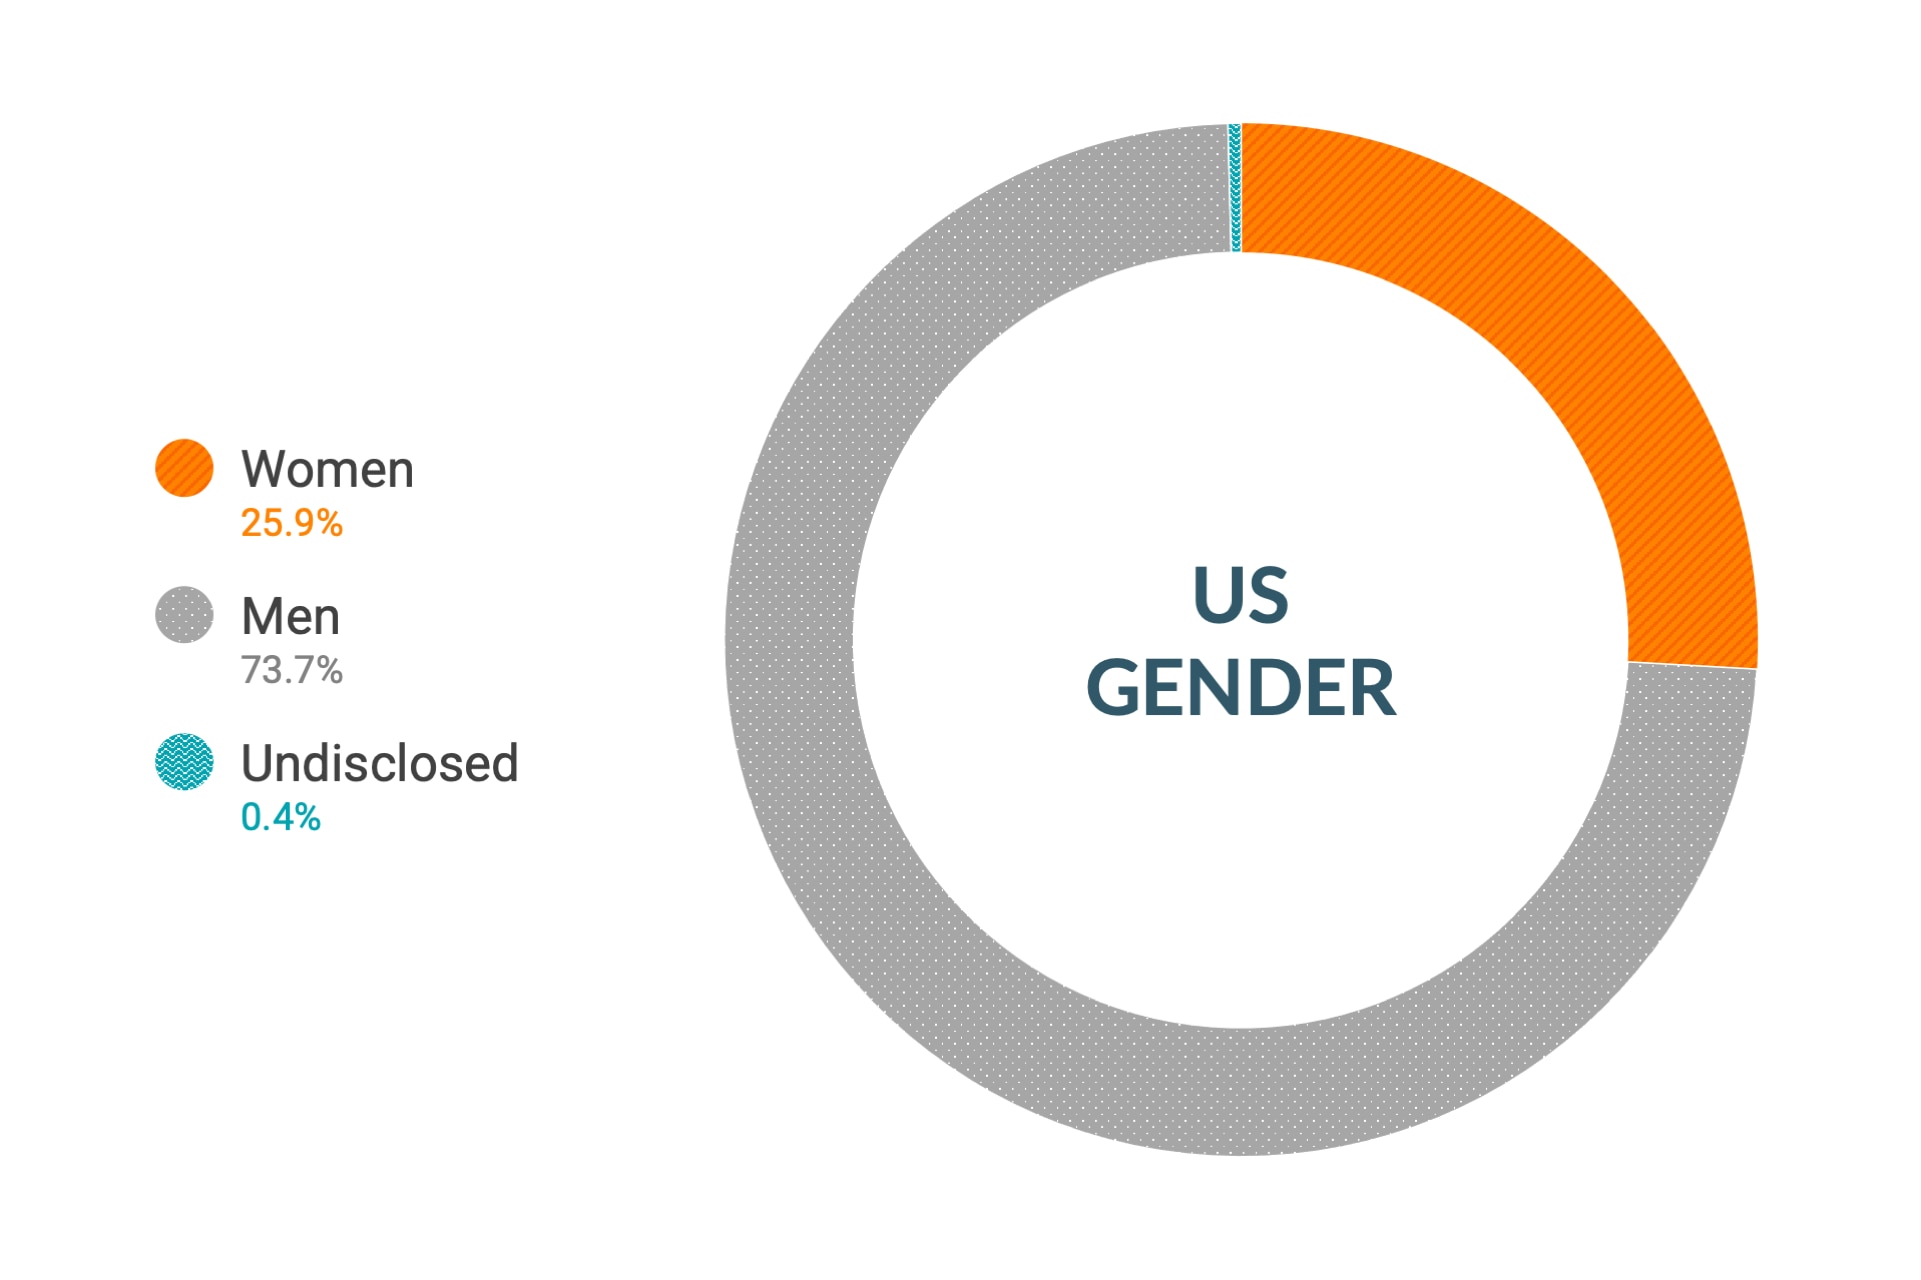 Dane firmy Cloudera dotyczące różnorodności i integracji dla płci w Stanach Zjednoczonych: kobiety 26%, mężczyźni 74%